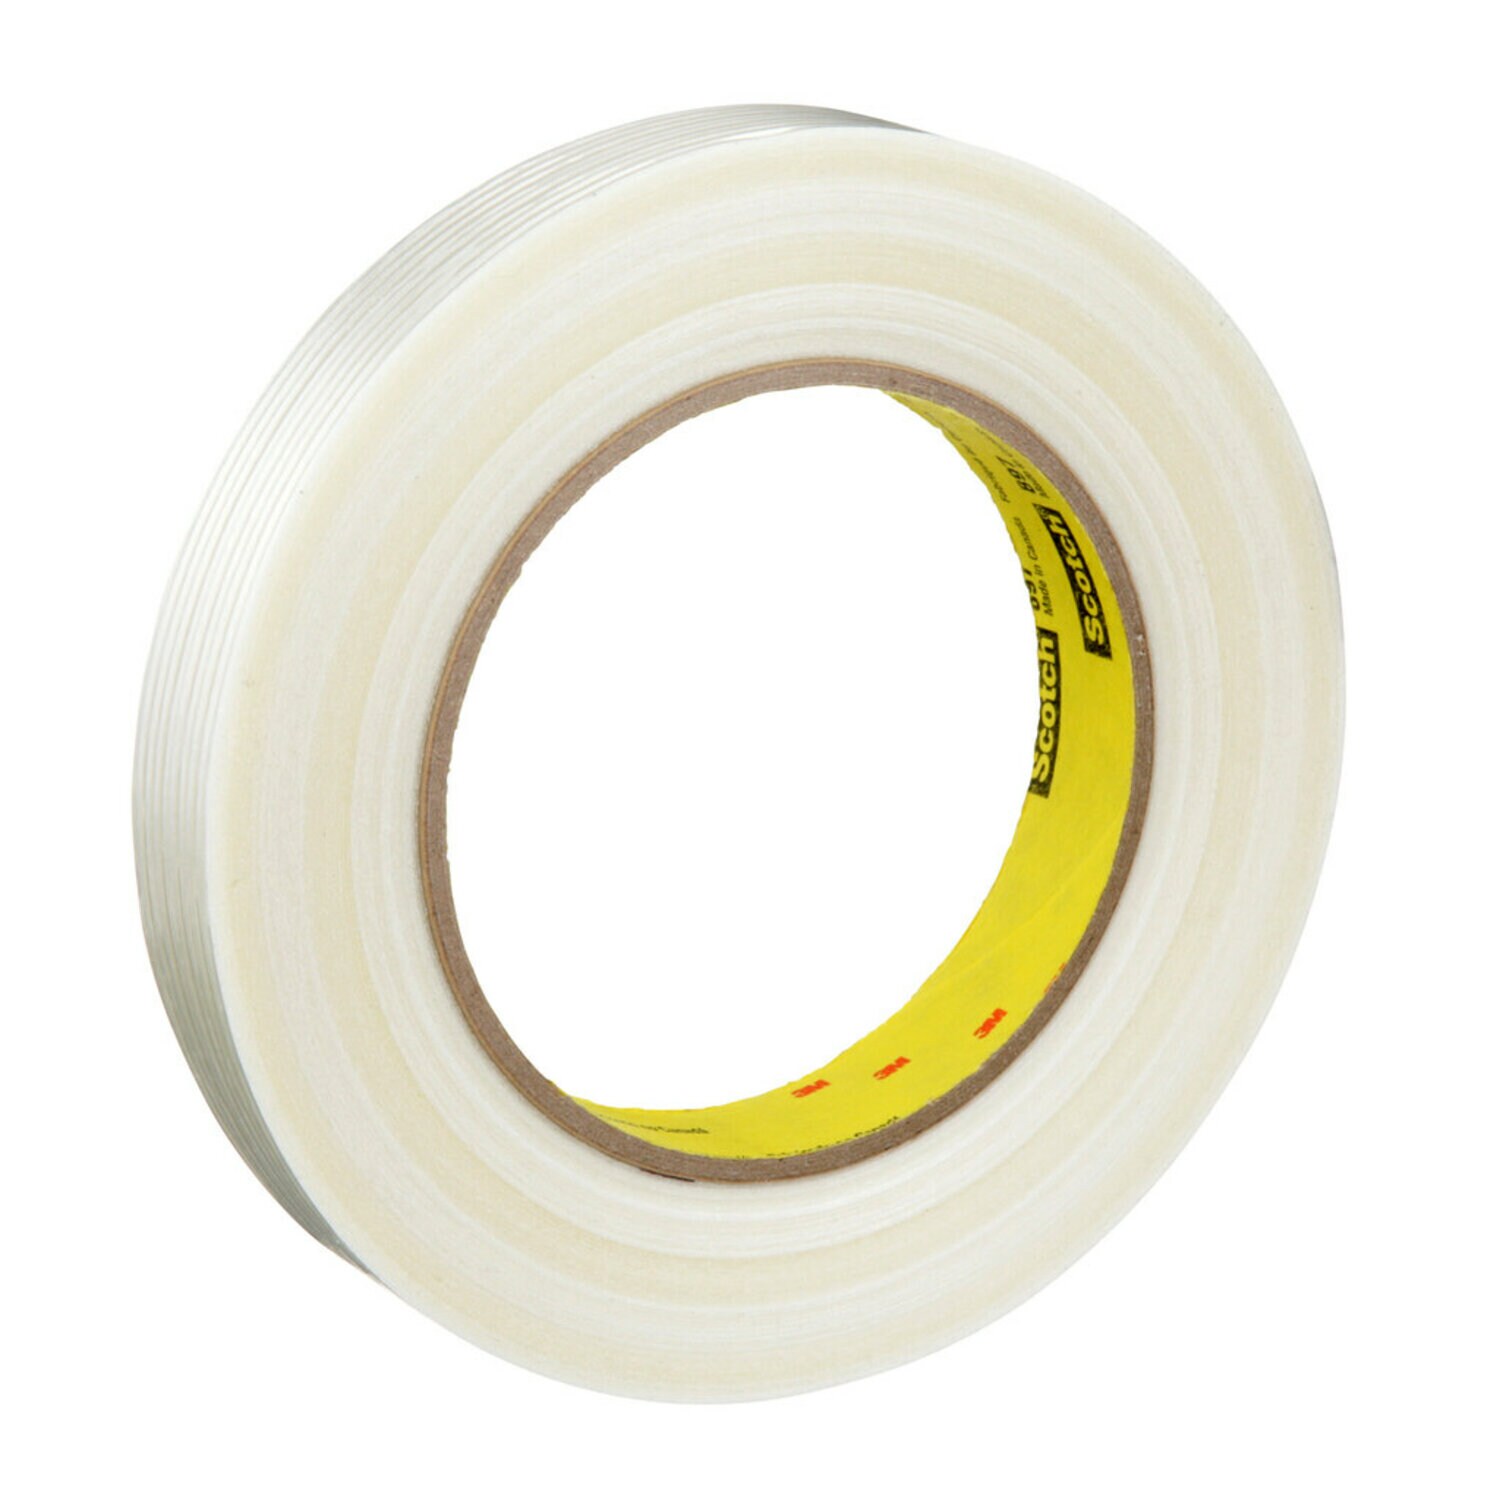 7000123441 - Scotch Filament Tape 897, Clear, 18 mm x 55 m, 5 mil, 48 rolls per case